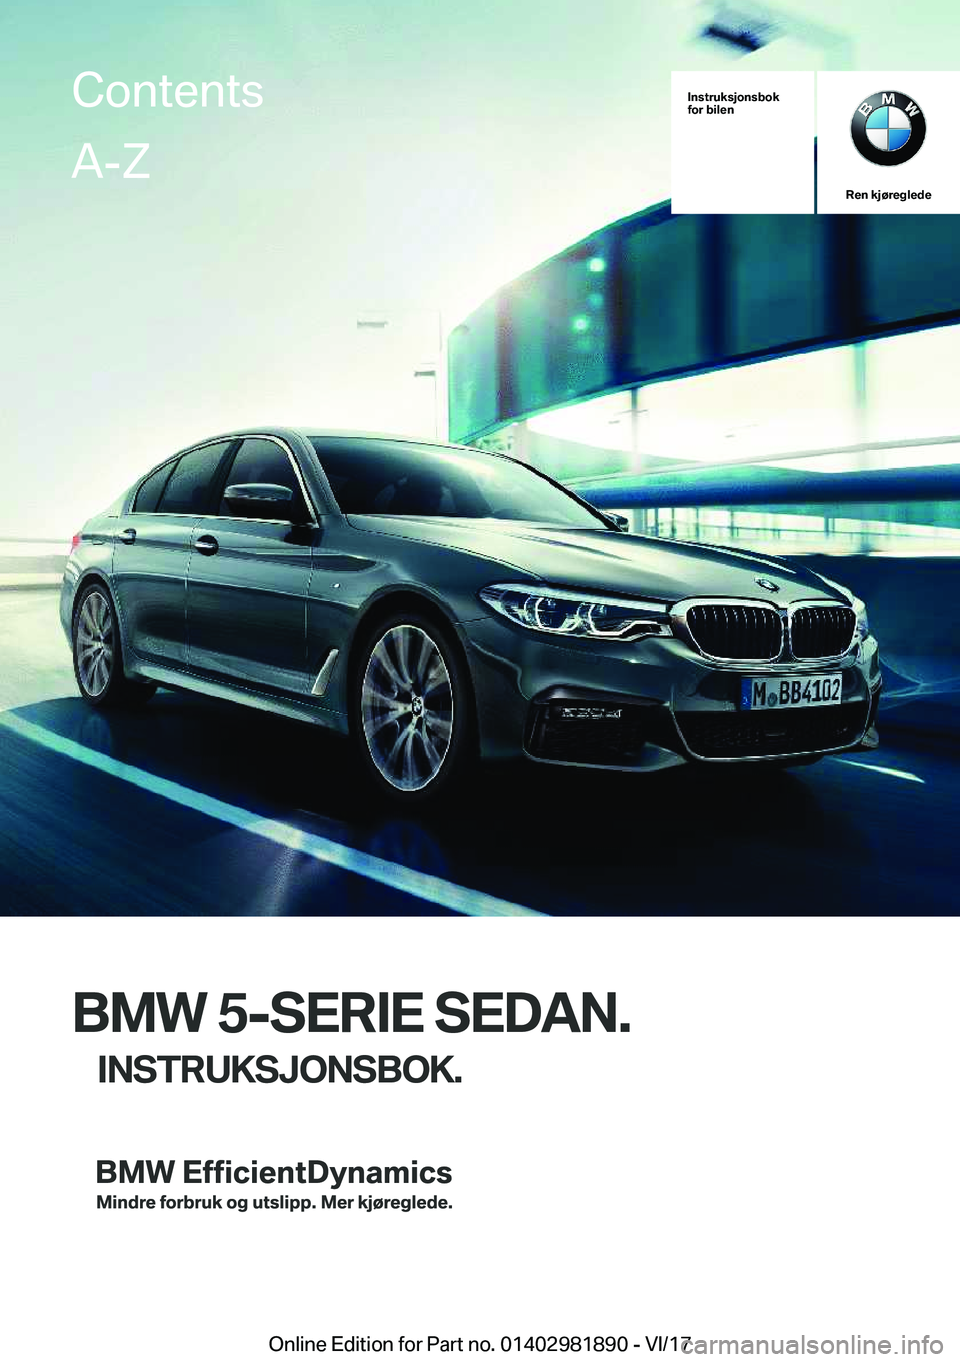 BMW 5 SERIES 2018  InstruksjonsbØker (in Norwegian) �I�n�s�t�r�u�k�s�j�o�n�s�b�o�k
�f�o�r��b�i�l�e�n
�R�e�n��k�j�